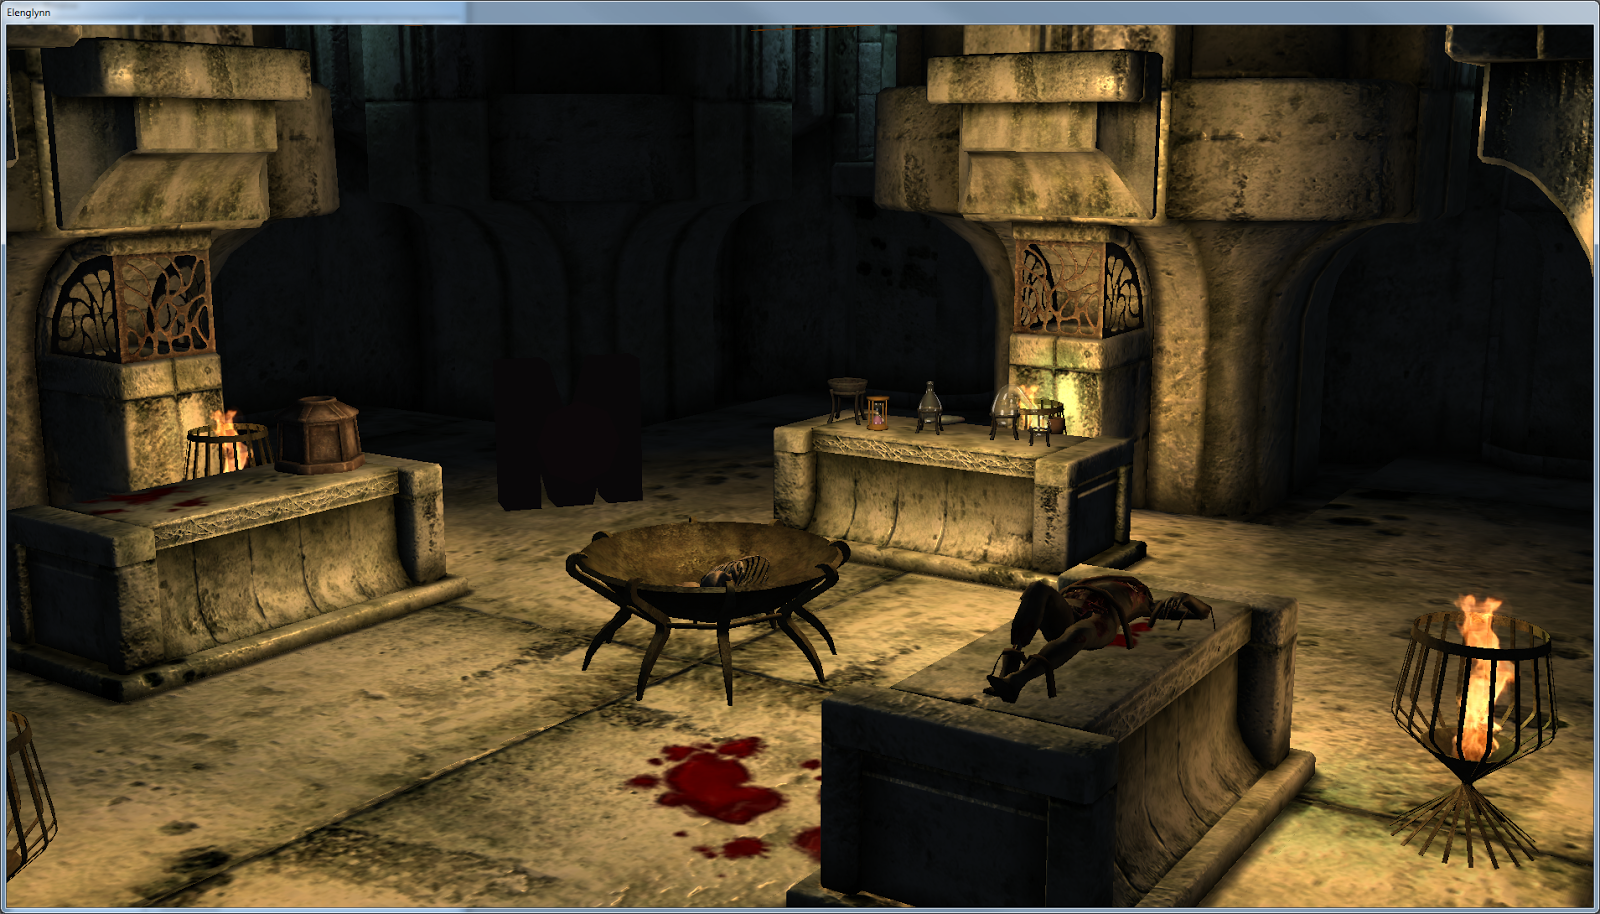 Повторяющиеся блоки в айледских руинах в The Elder Scrolls IV: Oblivion.